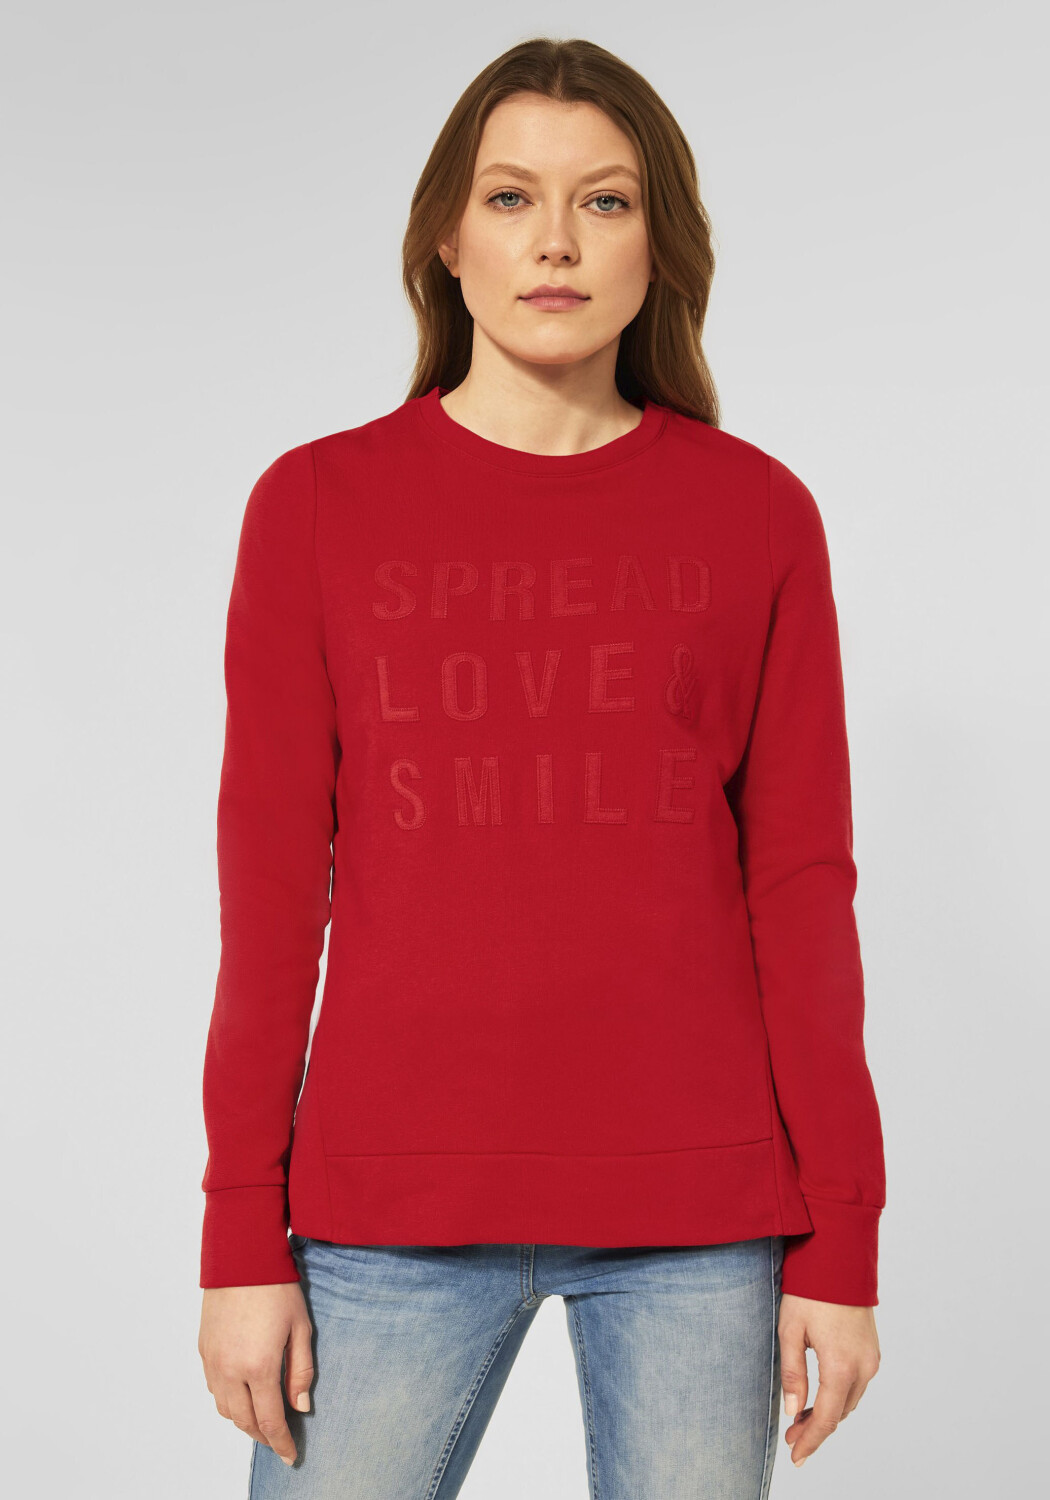 Cecil Sweatshirt mit Wording (B301846) vibrant red ab 44,99 € |  Preisvergleich bei